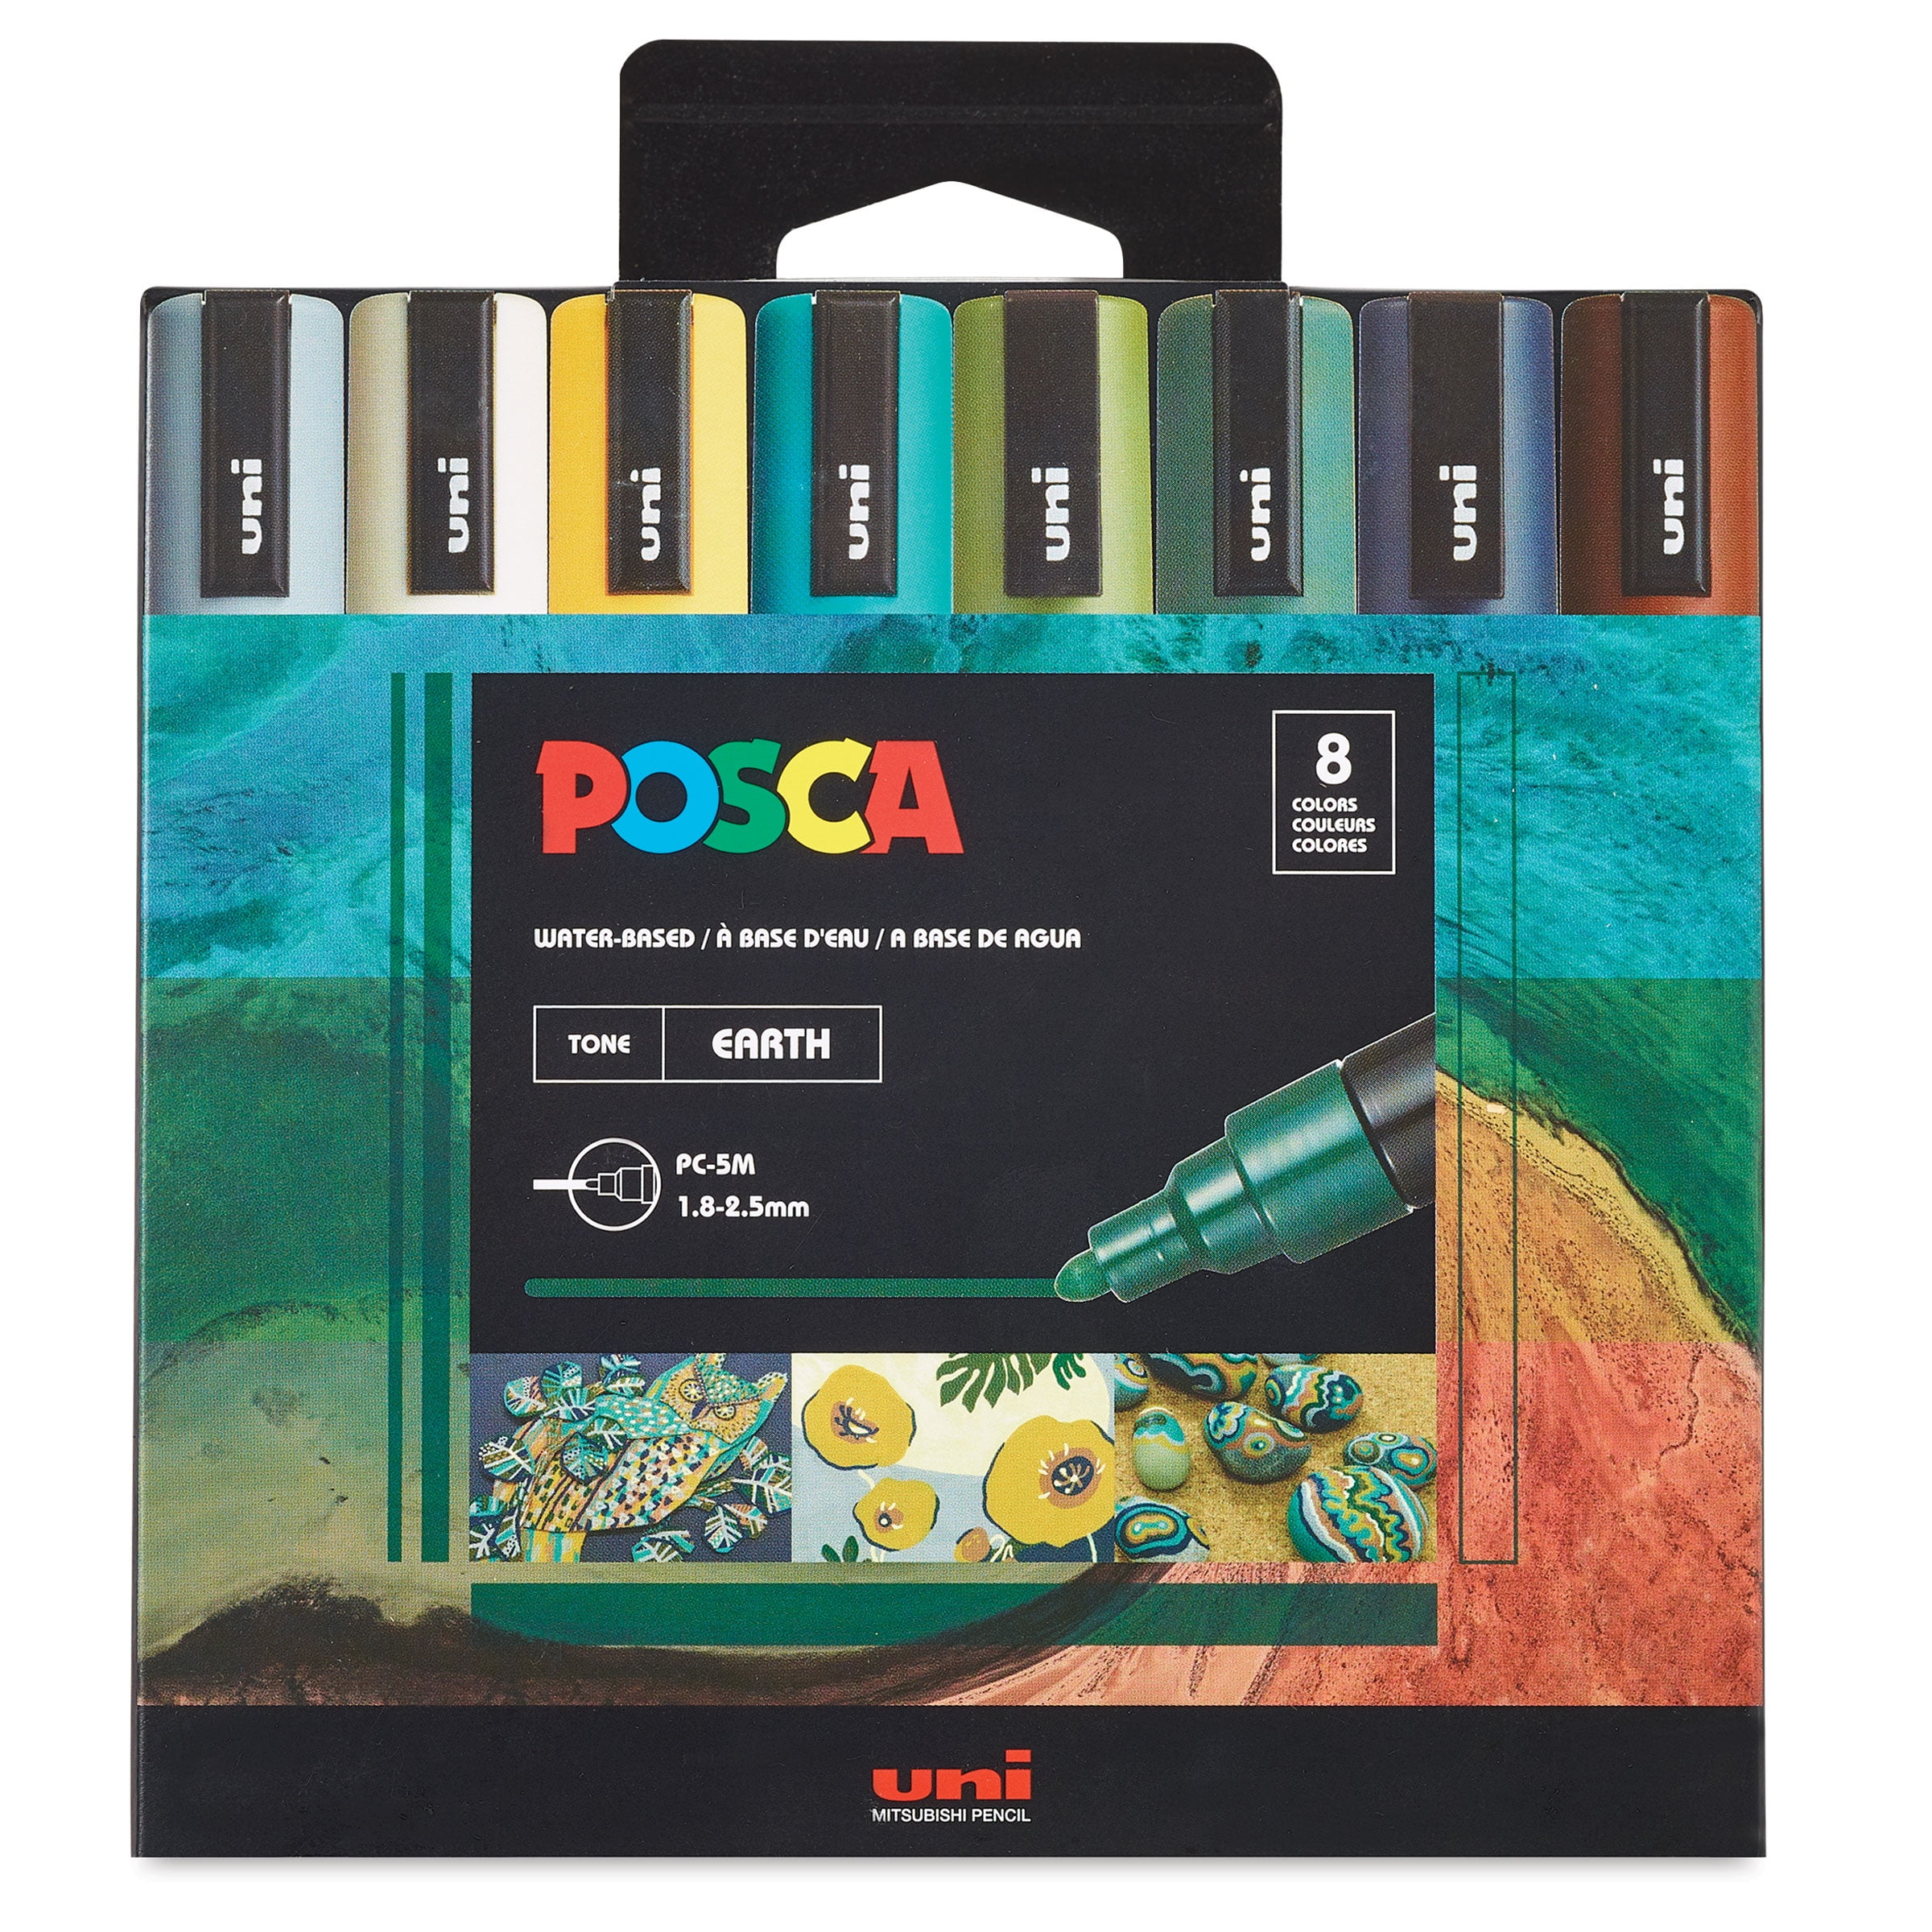 Uni Posca Paint Markers, Medium - Standard (set of 8) – Ink & Lead